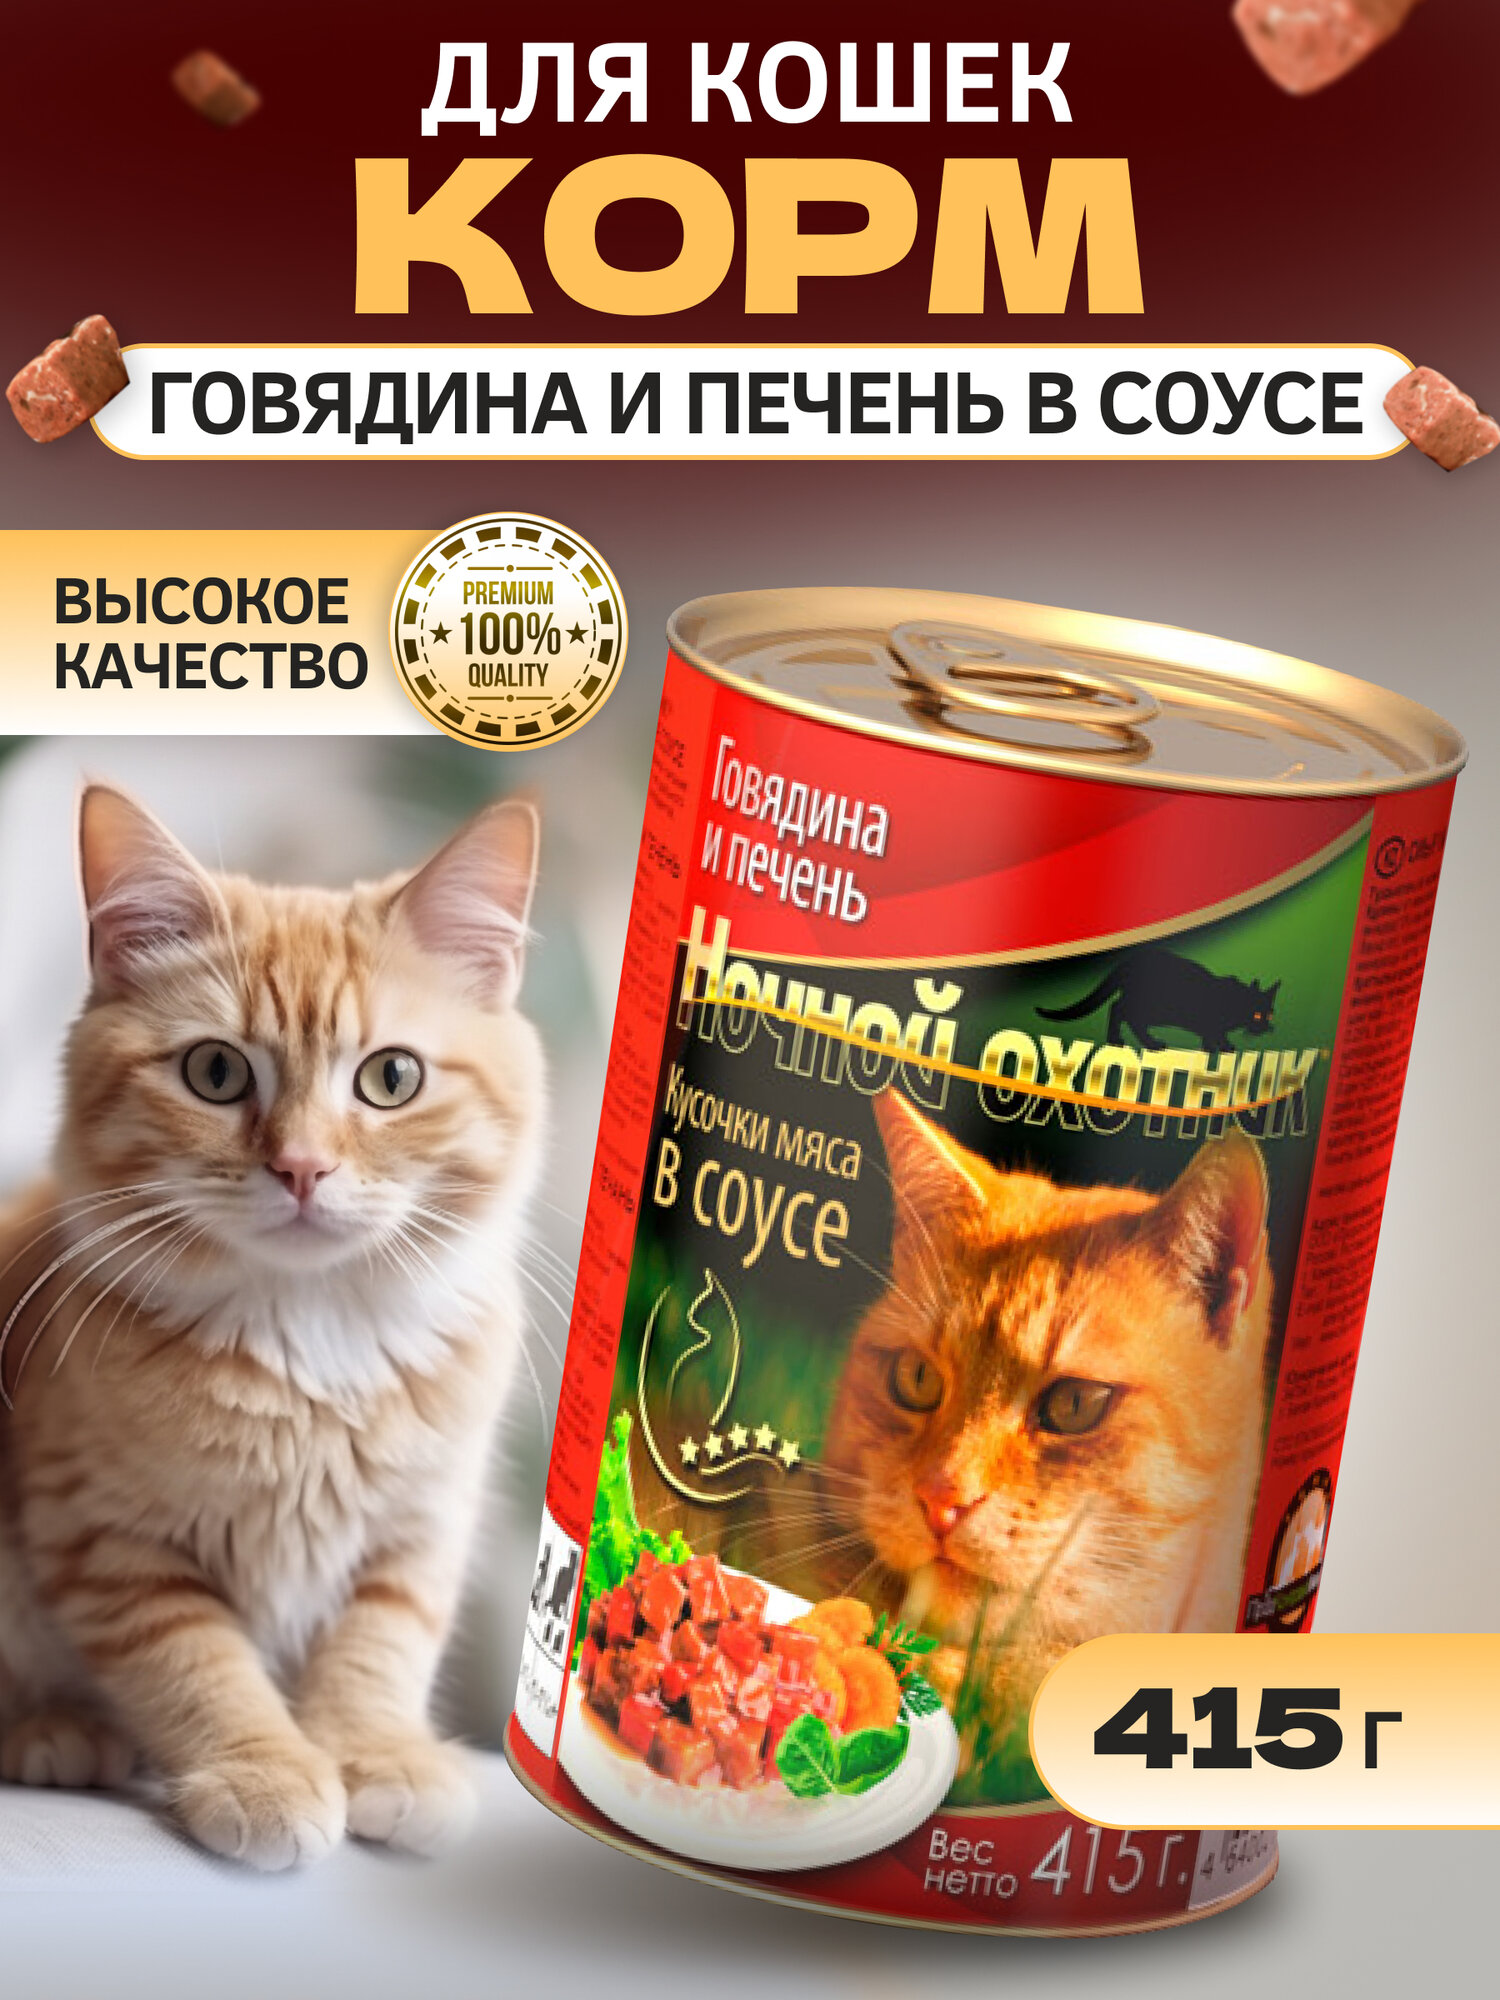 Корм для кошек Говядина Печень в соусе, 415